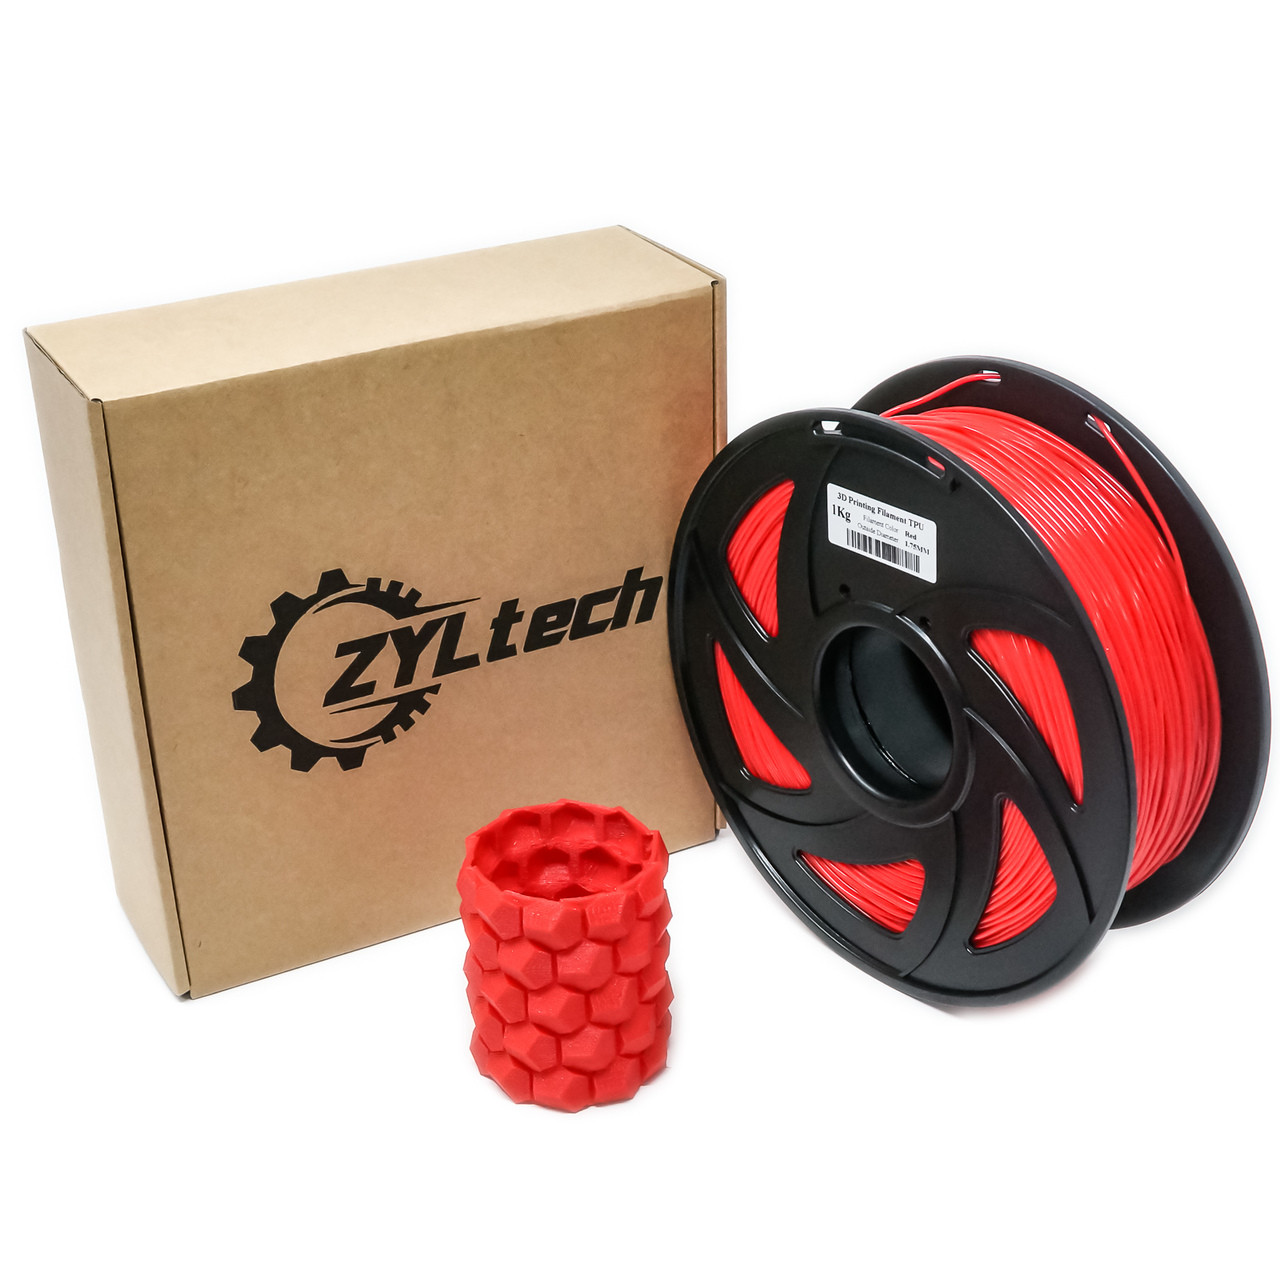 Basics TPU 3D Printer Filament, 1.75 mm, Red, 1 kg Spool (2.2 lbs)